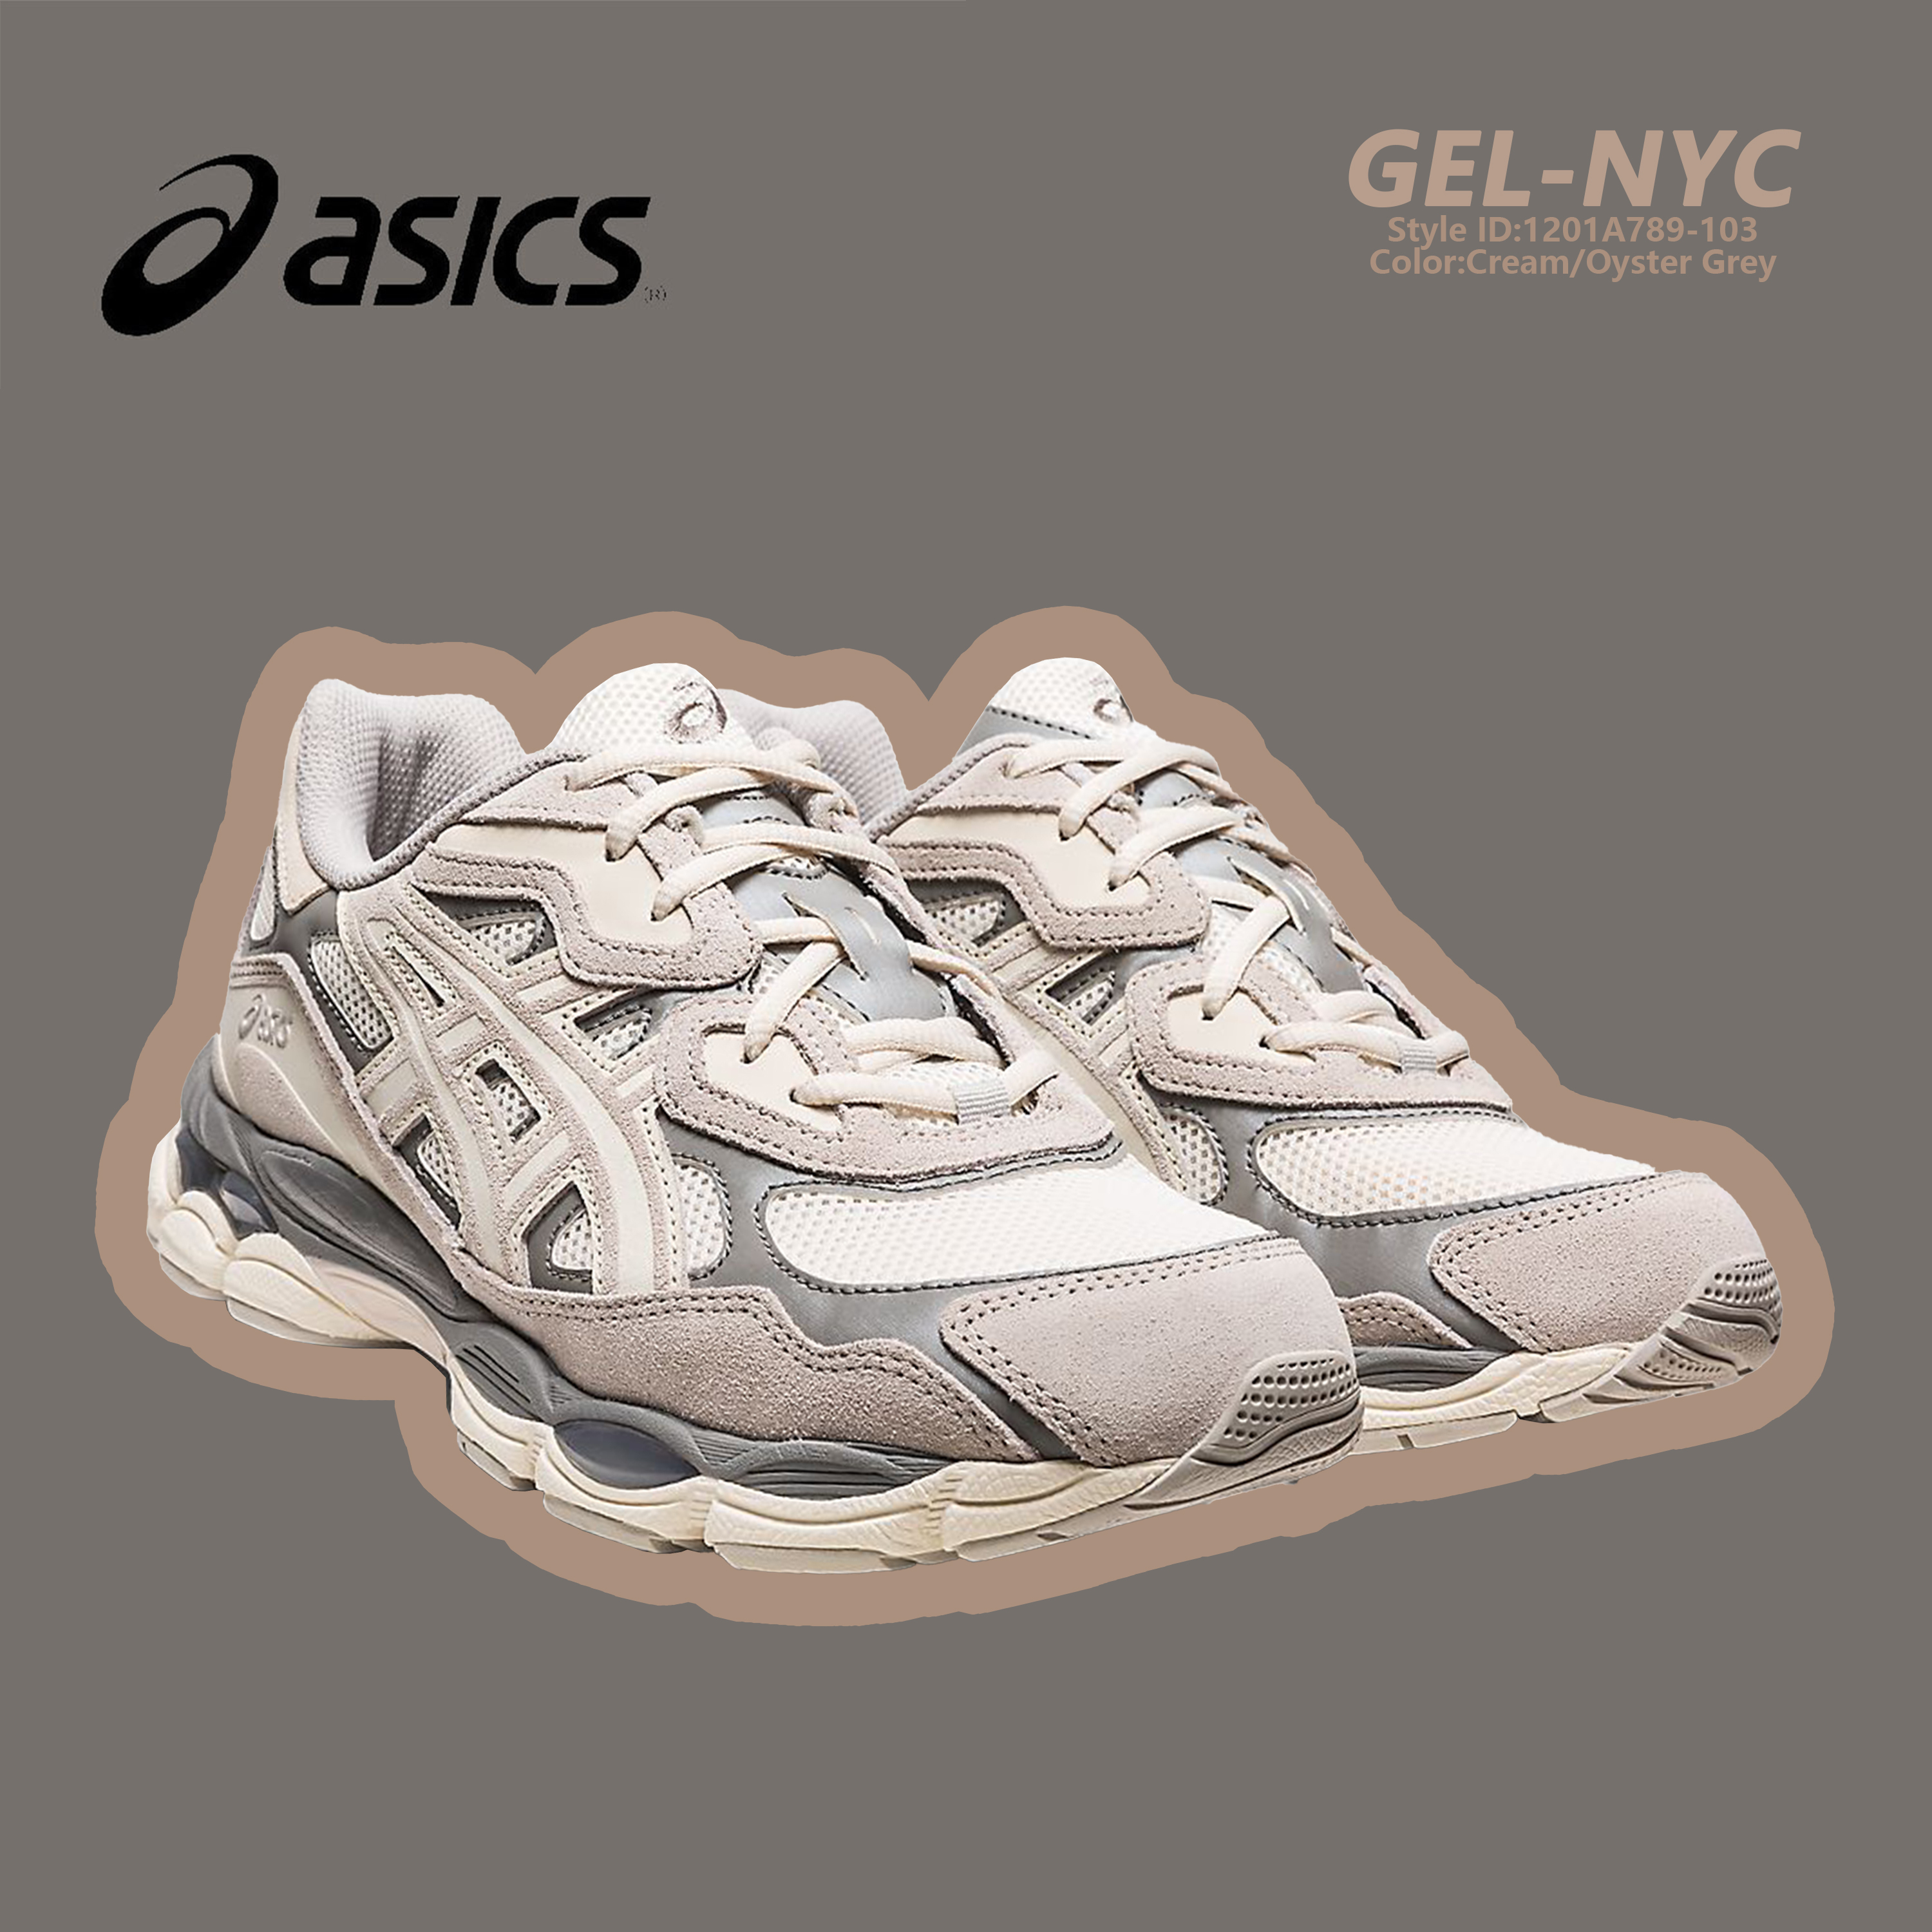 ASICS GEL-NYC Urbancore Cream Oyster Grey